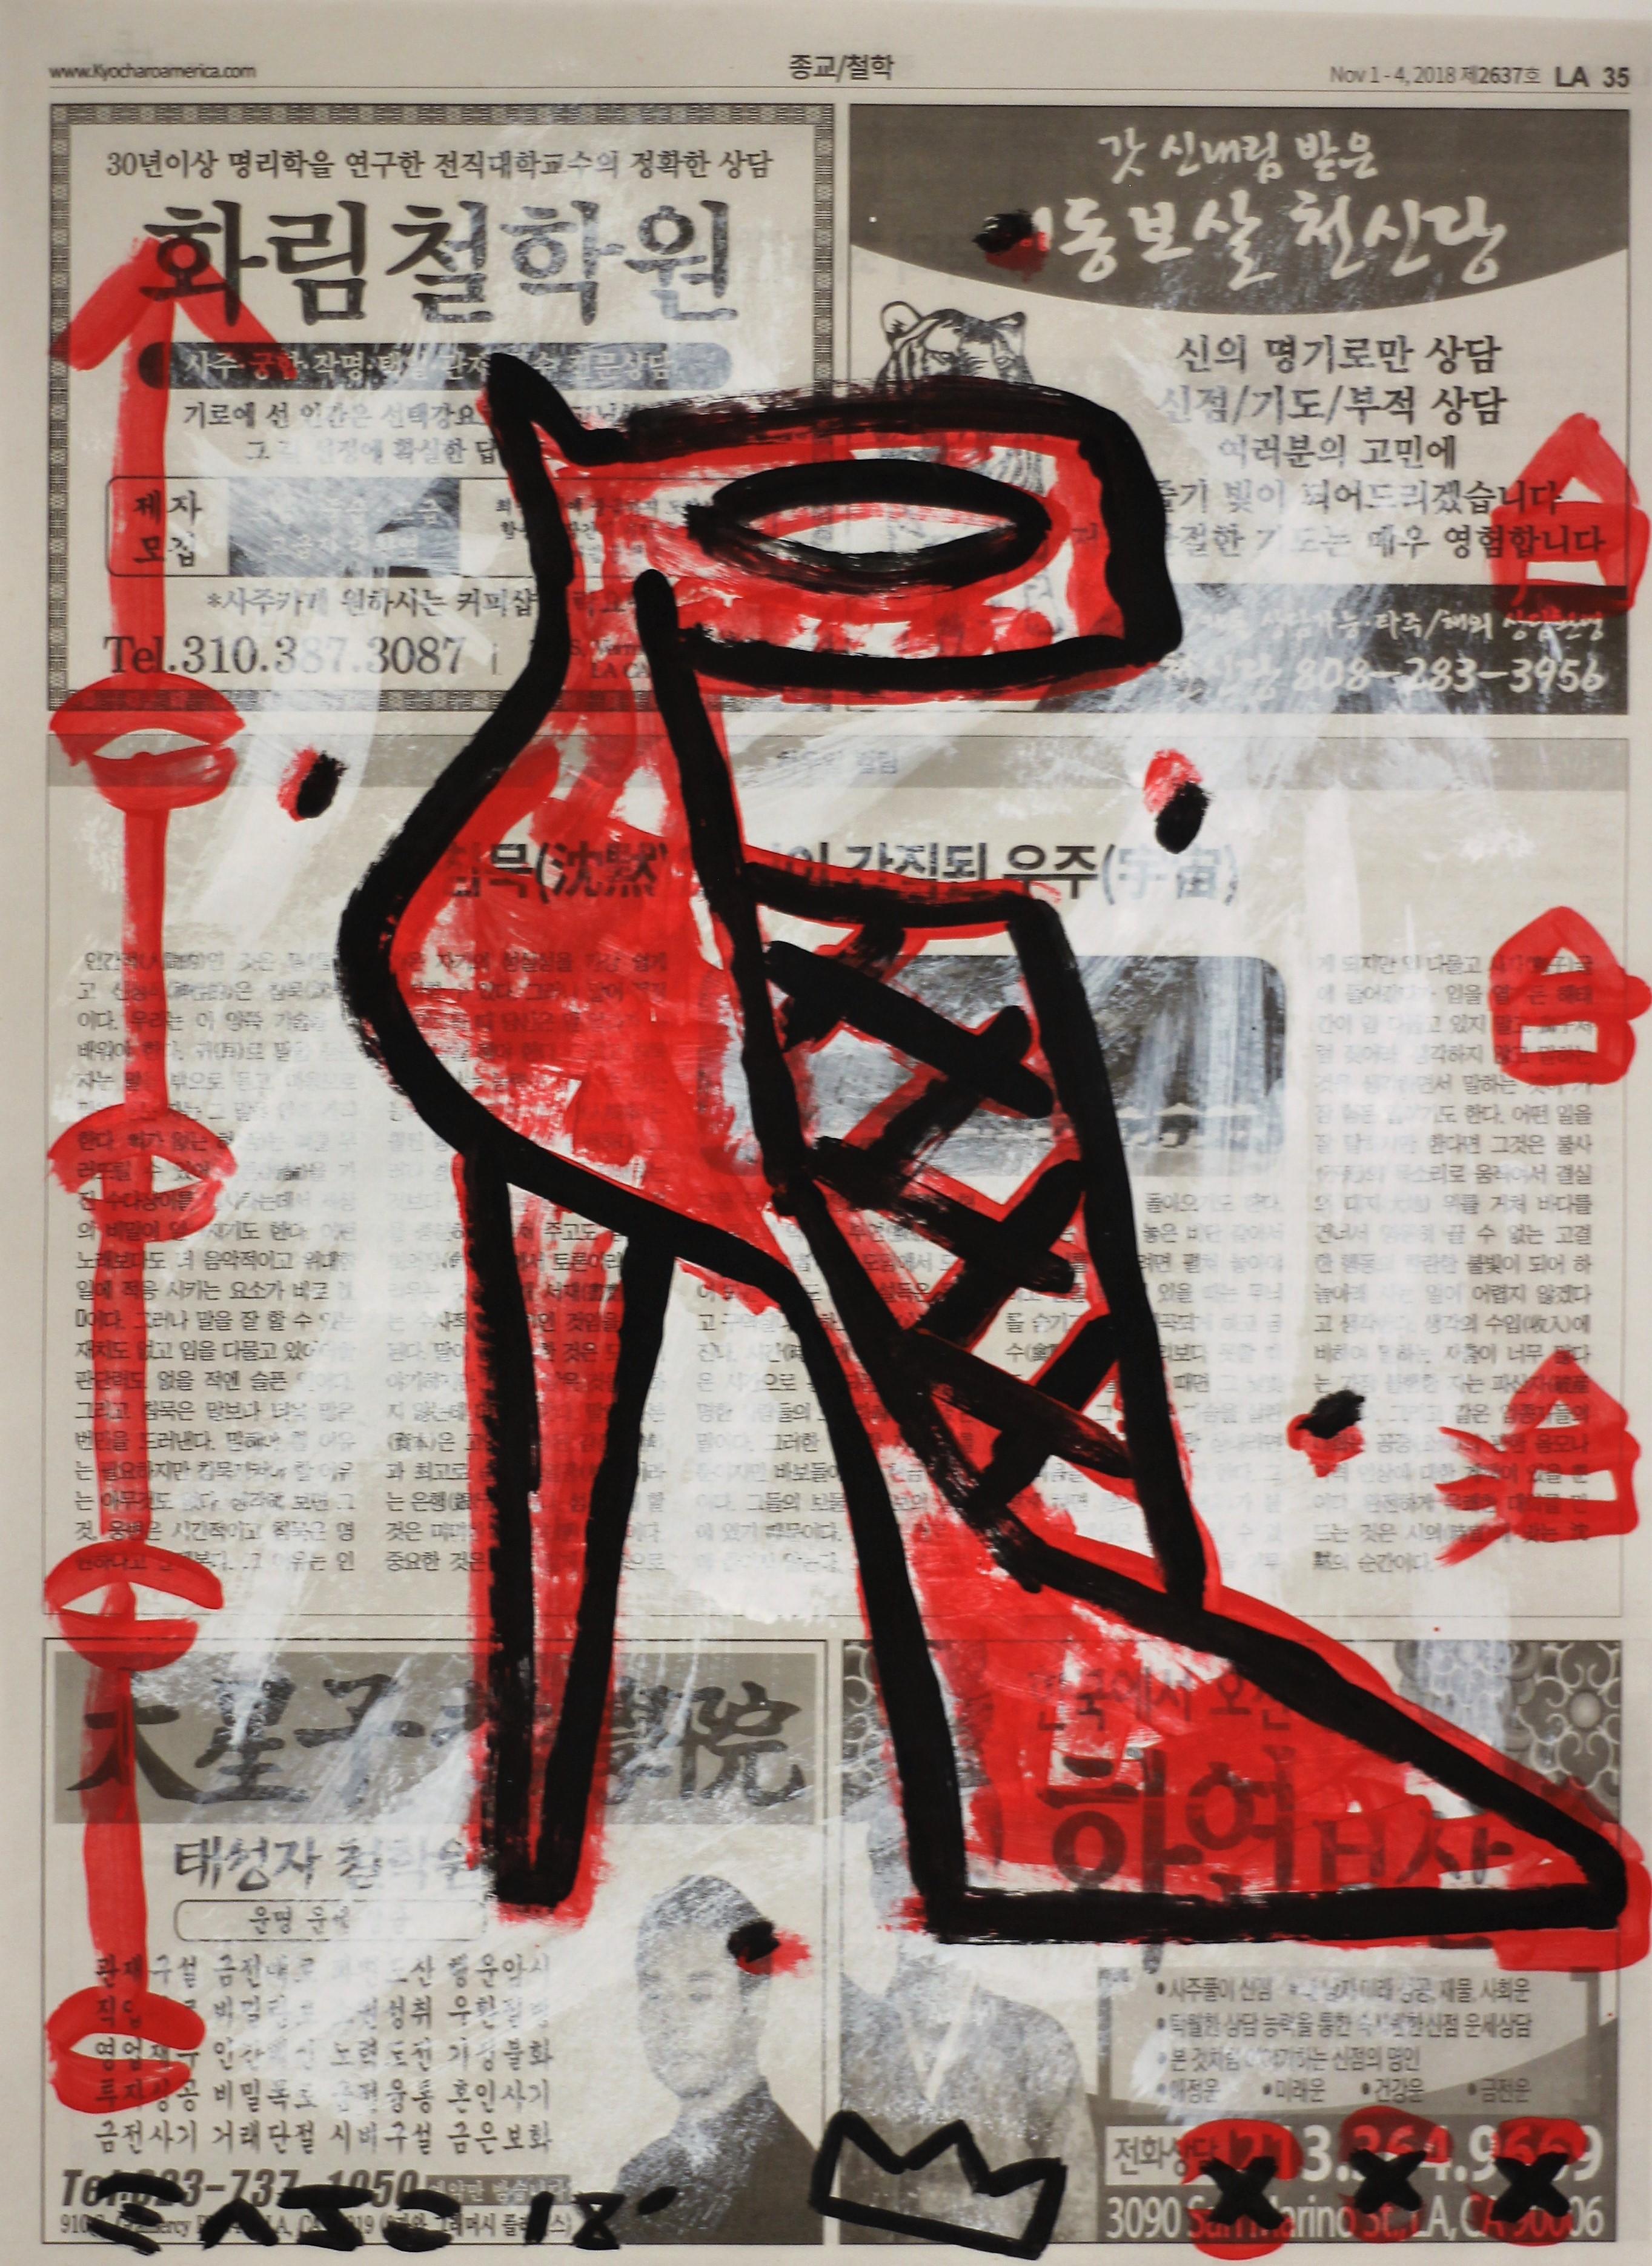 My Dream Shoe - Schwarzer und roter Stiletto Original Street Art auf Newsprint